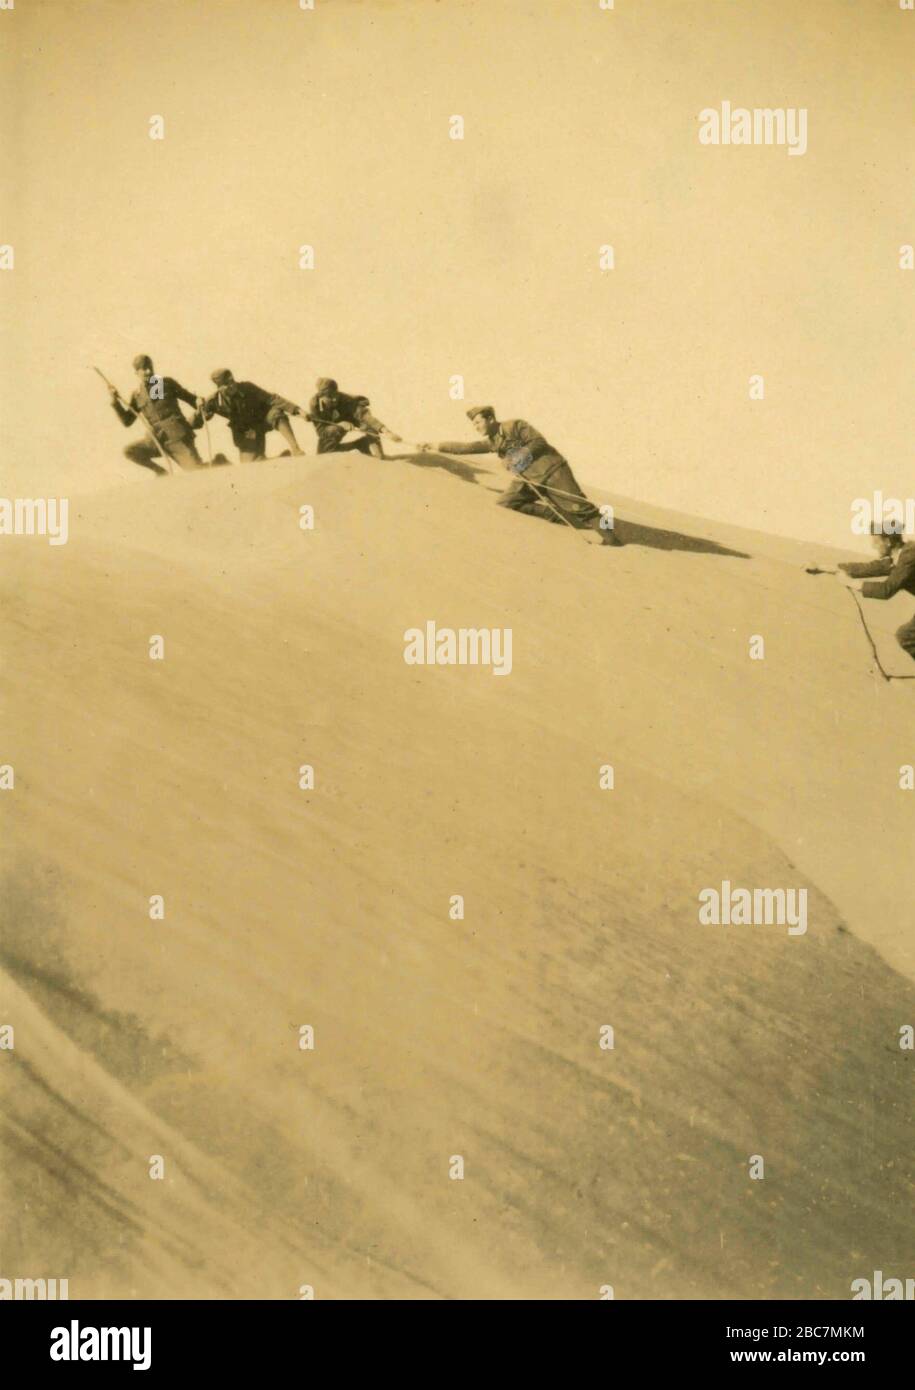 Soldats de l'armée royale italienne grimpant une dune dans le désert, colonies italiennes d'Afrique de l'est années 1930 Banque D'Images